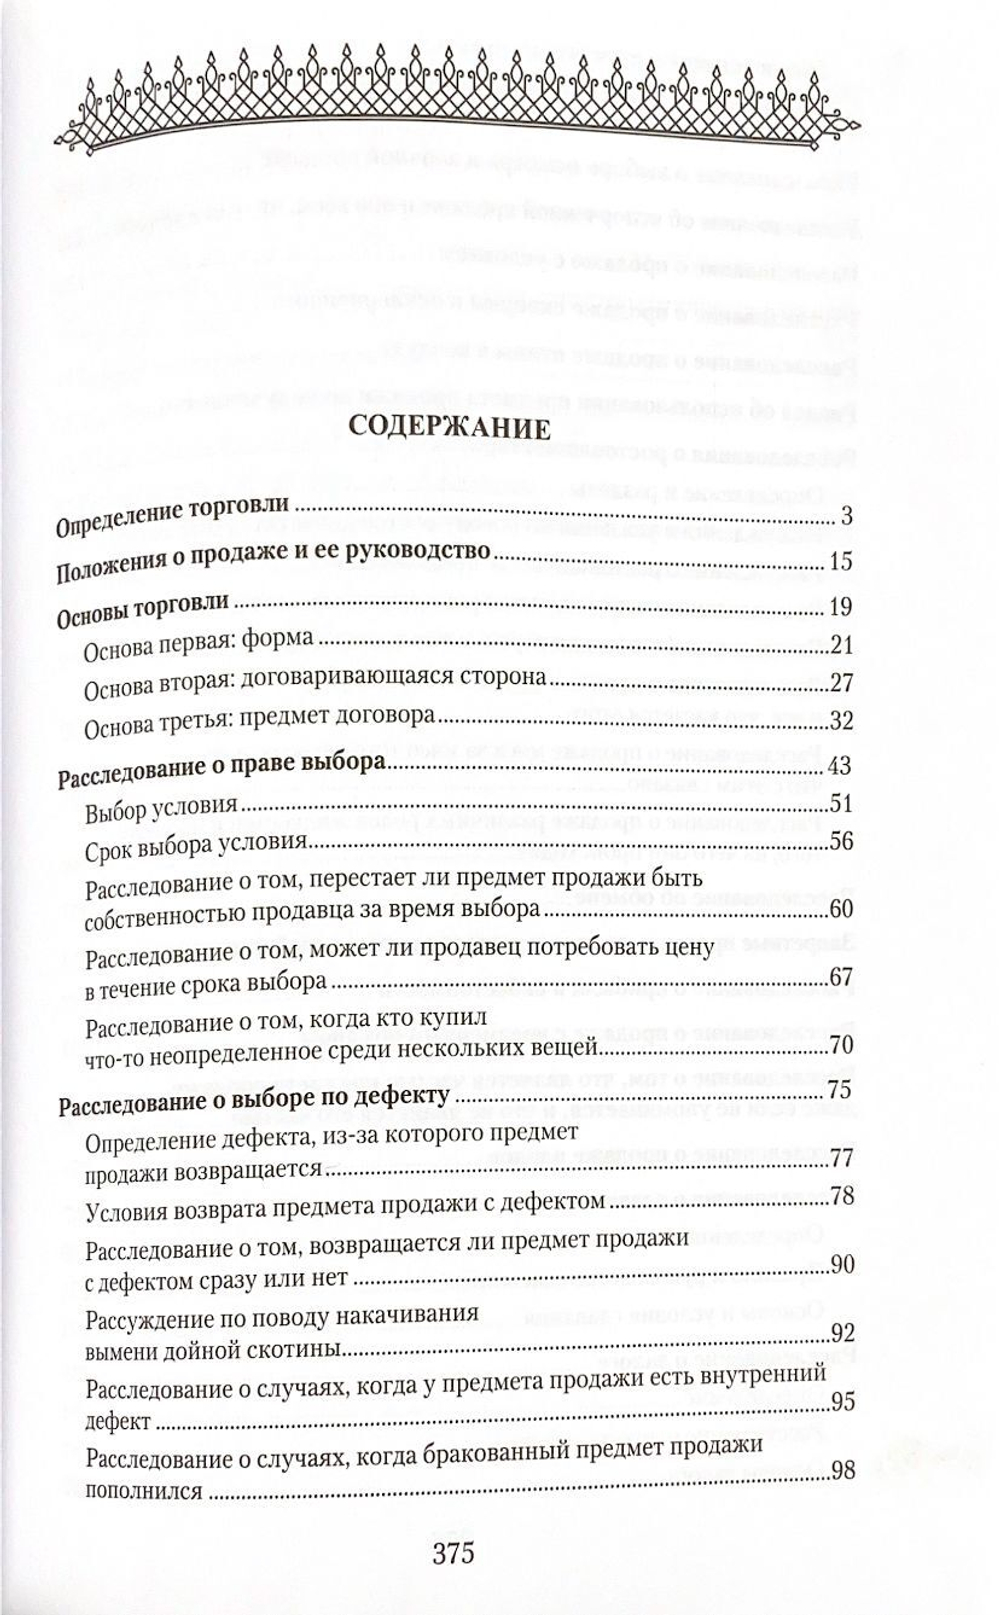 Законы торговли в четырех мазхабах. Популярная энциклопедия 16+ ISBN: 978-5-4236-0370-0